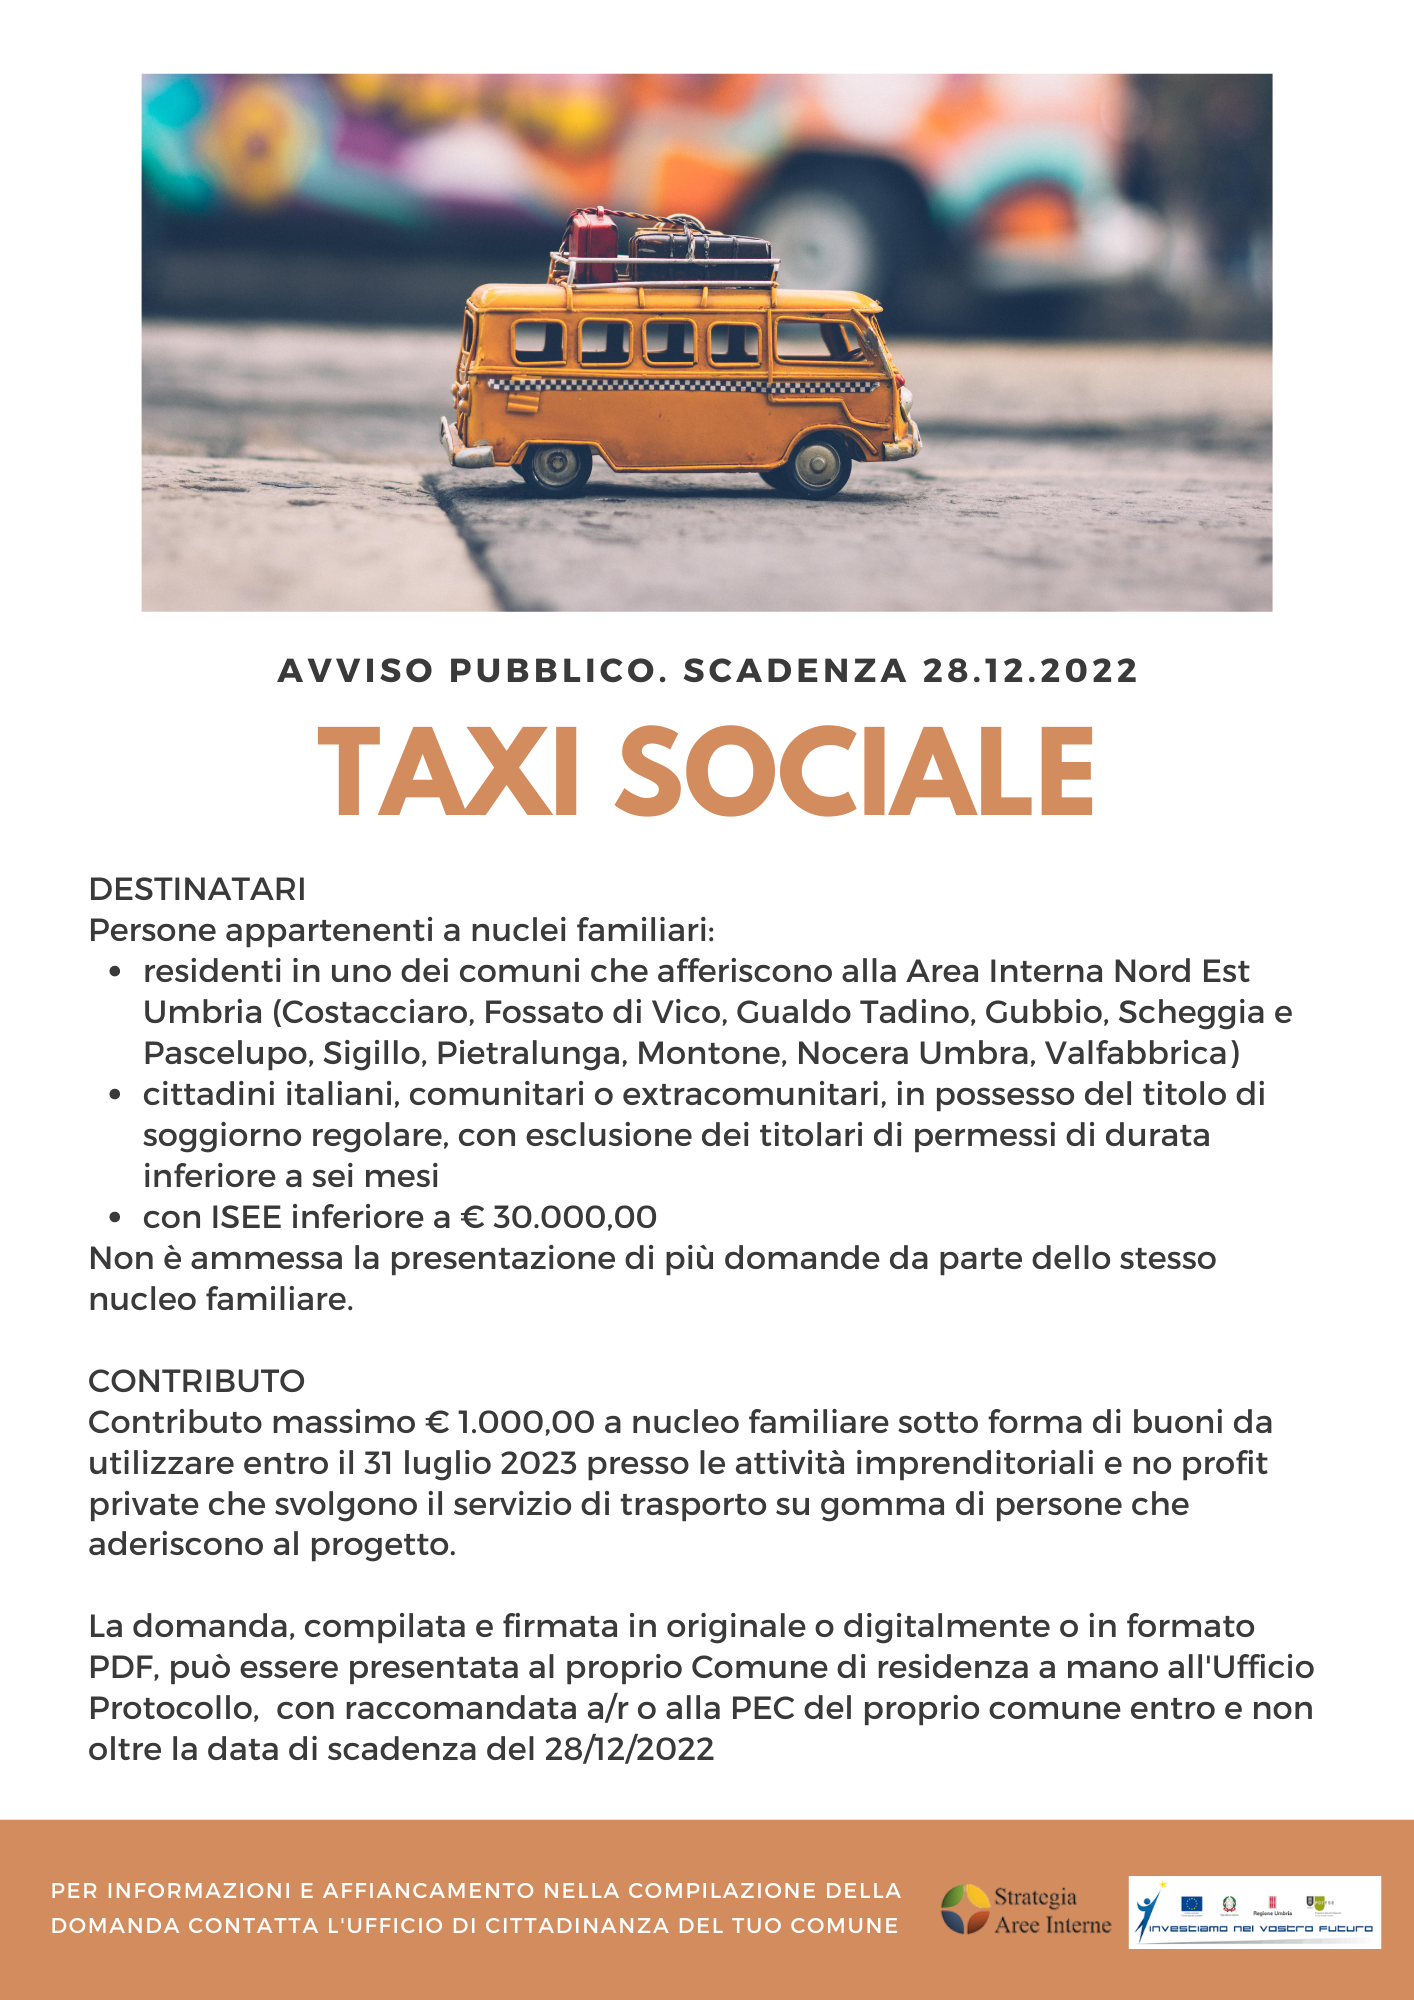 Taxi-sociale-2022-locandina-1 2947